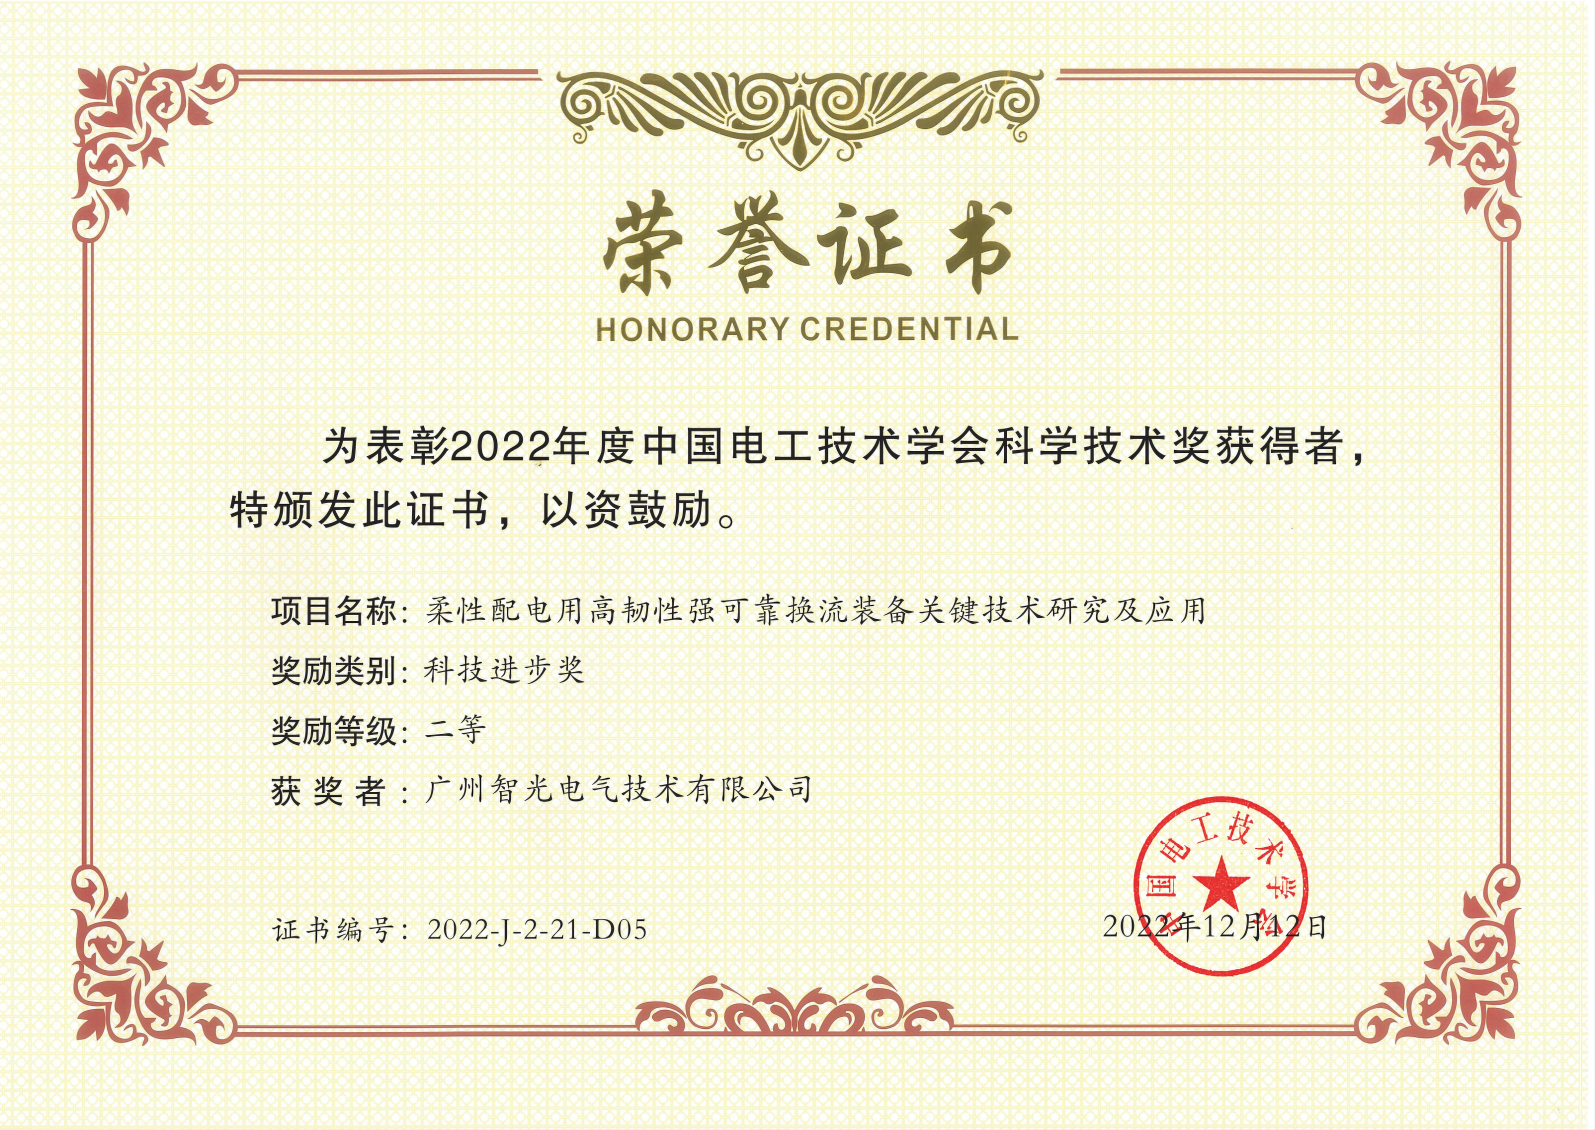 中国电工技术学会科学技术奖二等奖